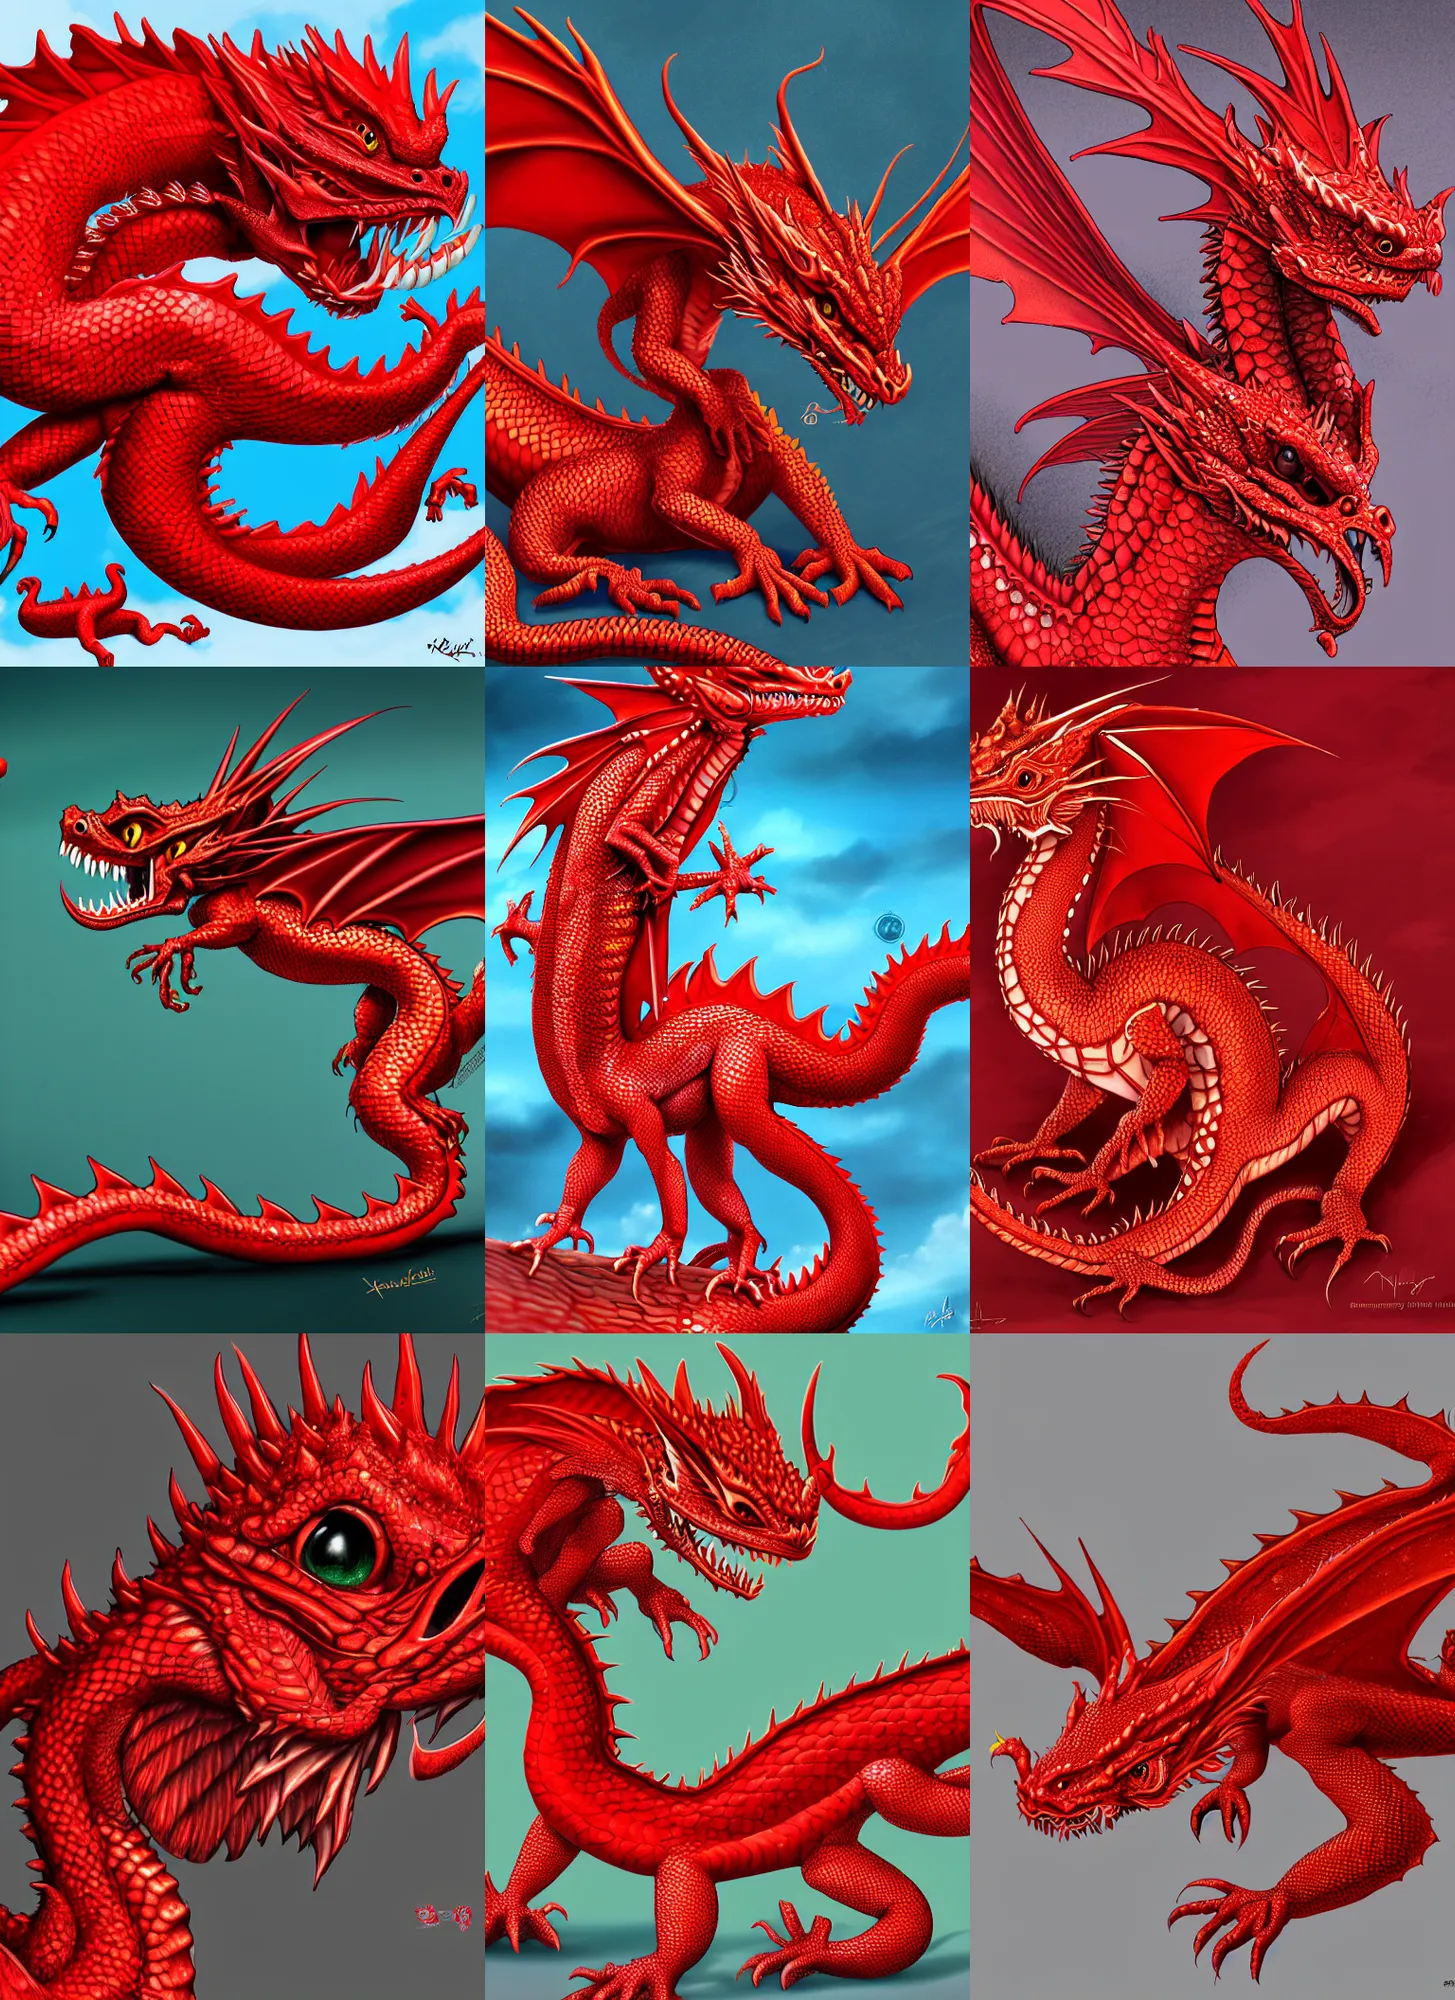 Prompt: a red dragonling pet, highly detailed illustration, 4k digital art